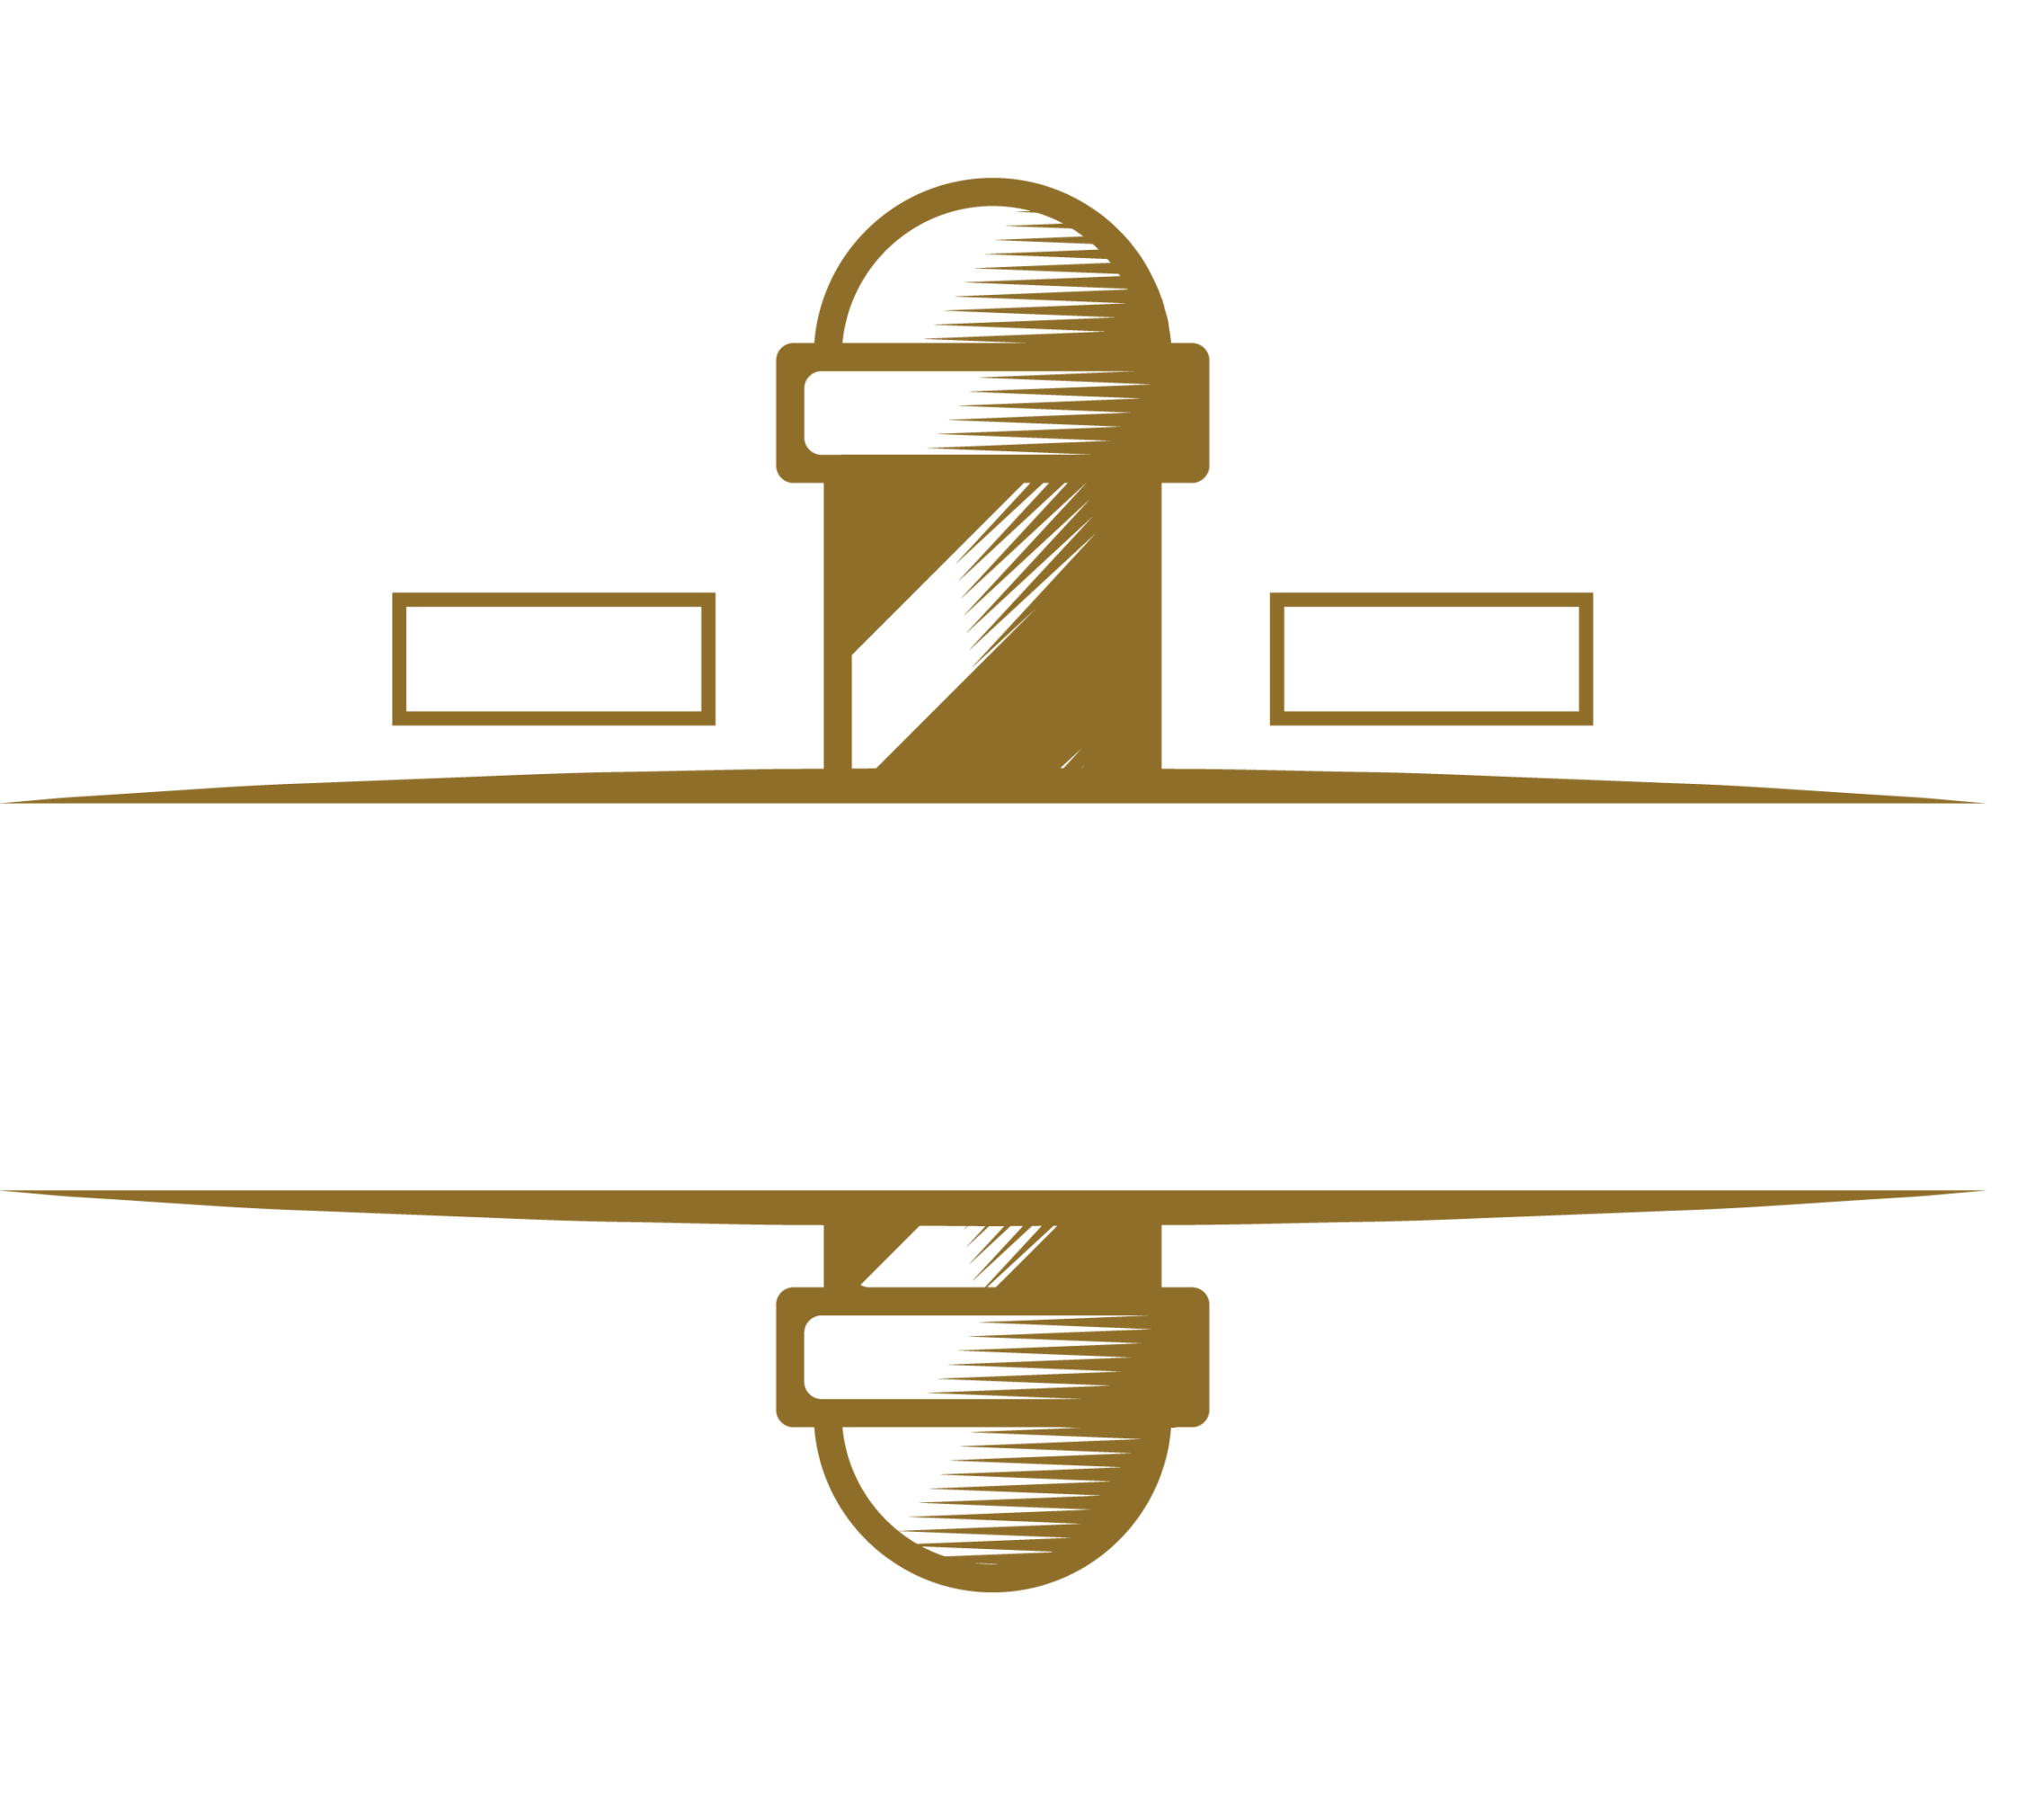 Barber Shop Chula Vista, CA